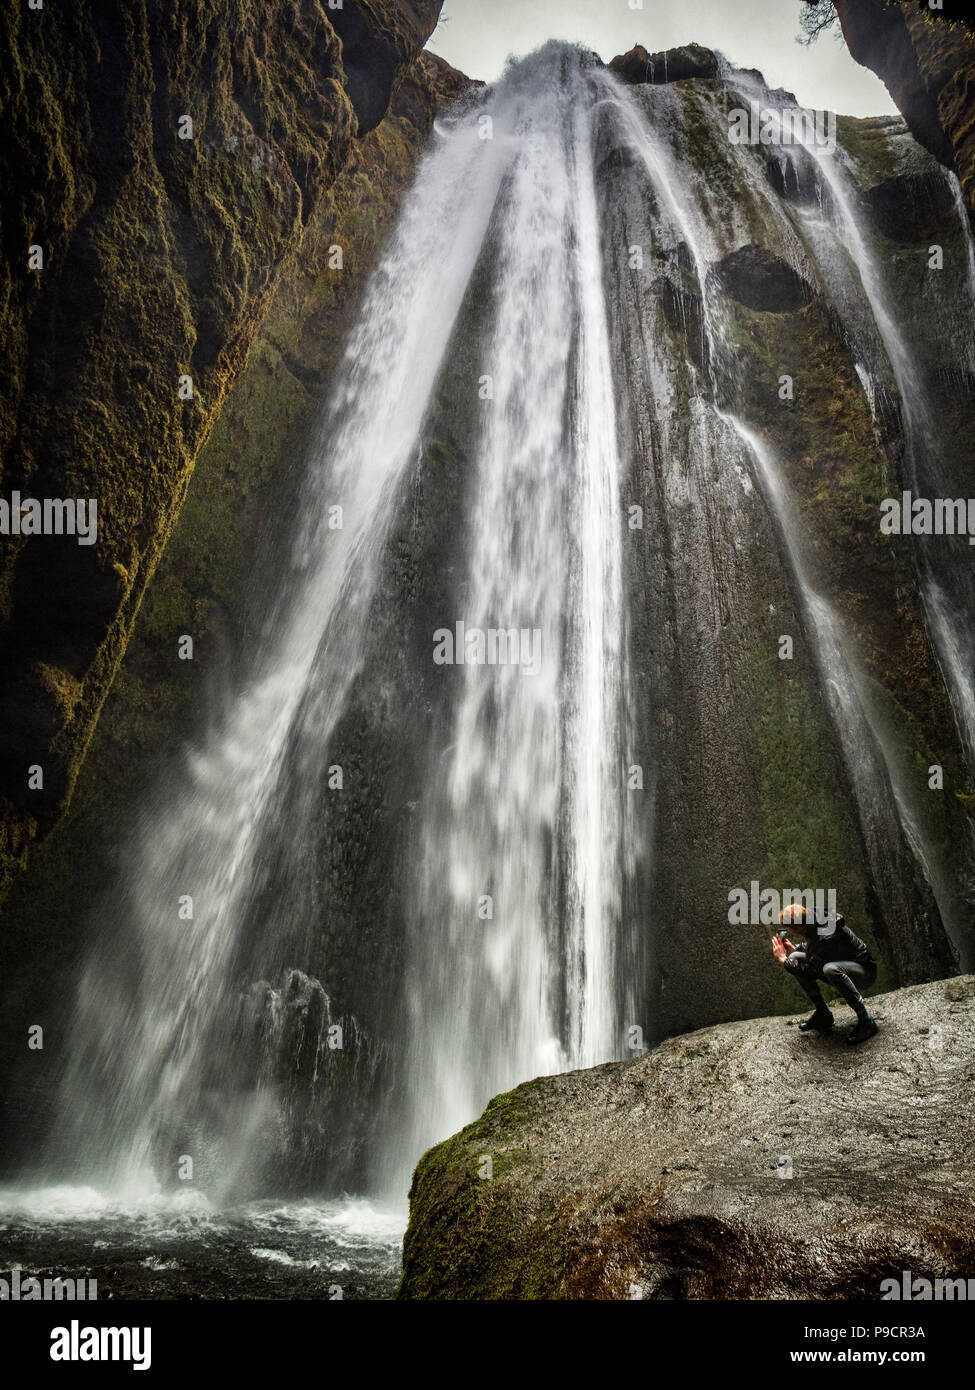 21 Aprile 2018: Sud Islanda - Gljufrabui cascata, e un uomo di scattare una foto con il suo telefono cellulare. Foto Stock